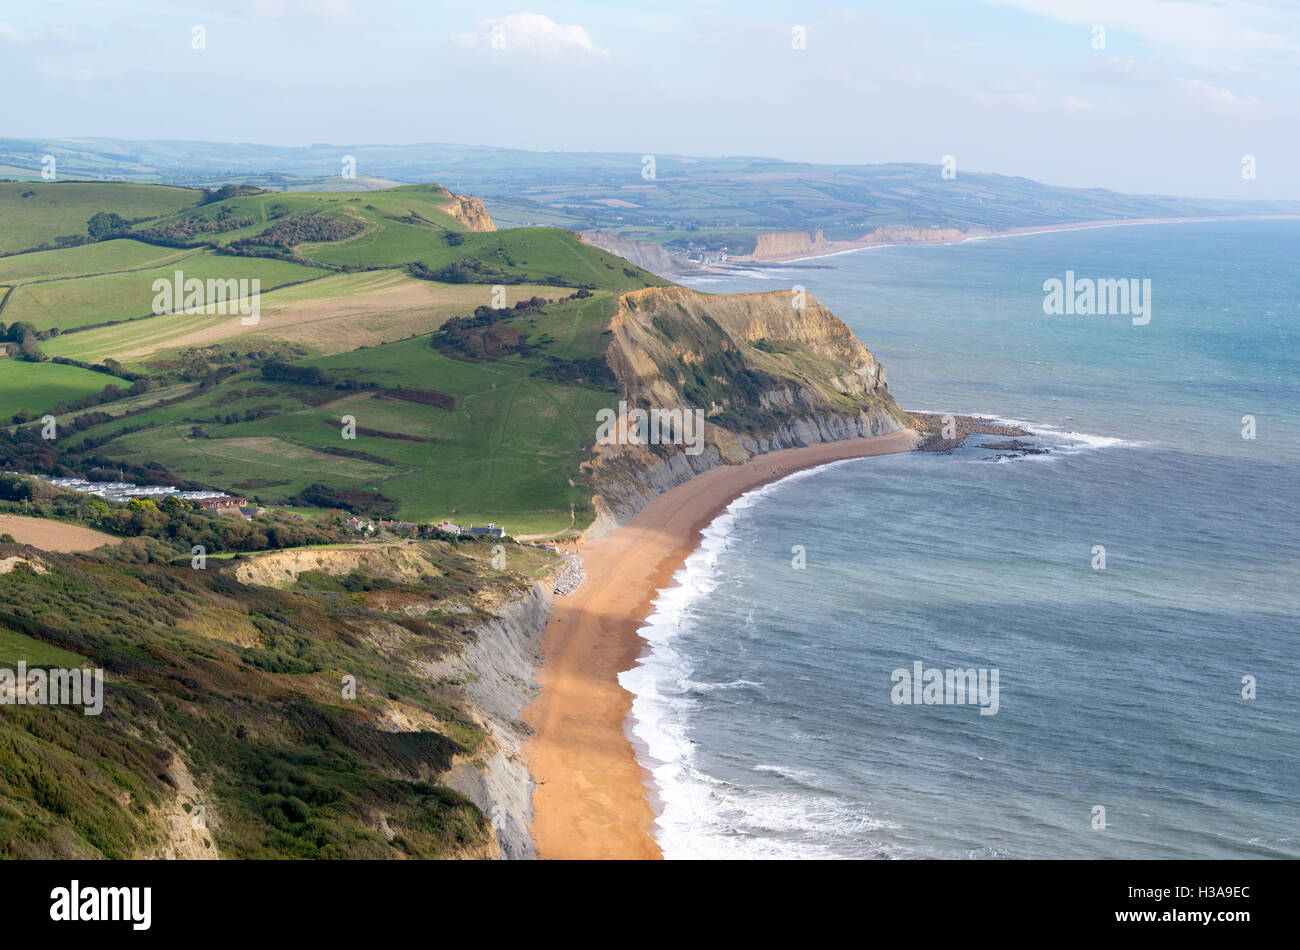 Guardando ad est dalla sommità del cappuccio dorato, Dorset, Regno Unito, il punto più alto sulla costa sud dell'Inghilterra, verso il lontano West Bay. Foto Stock